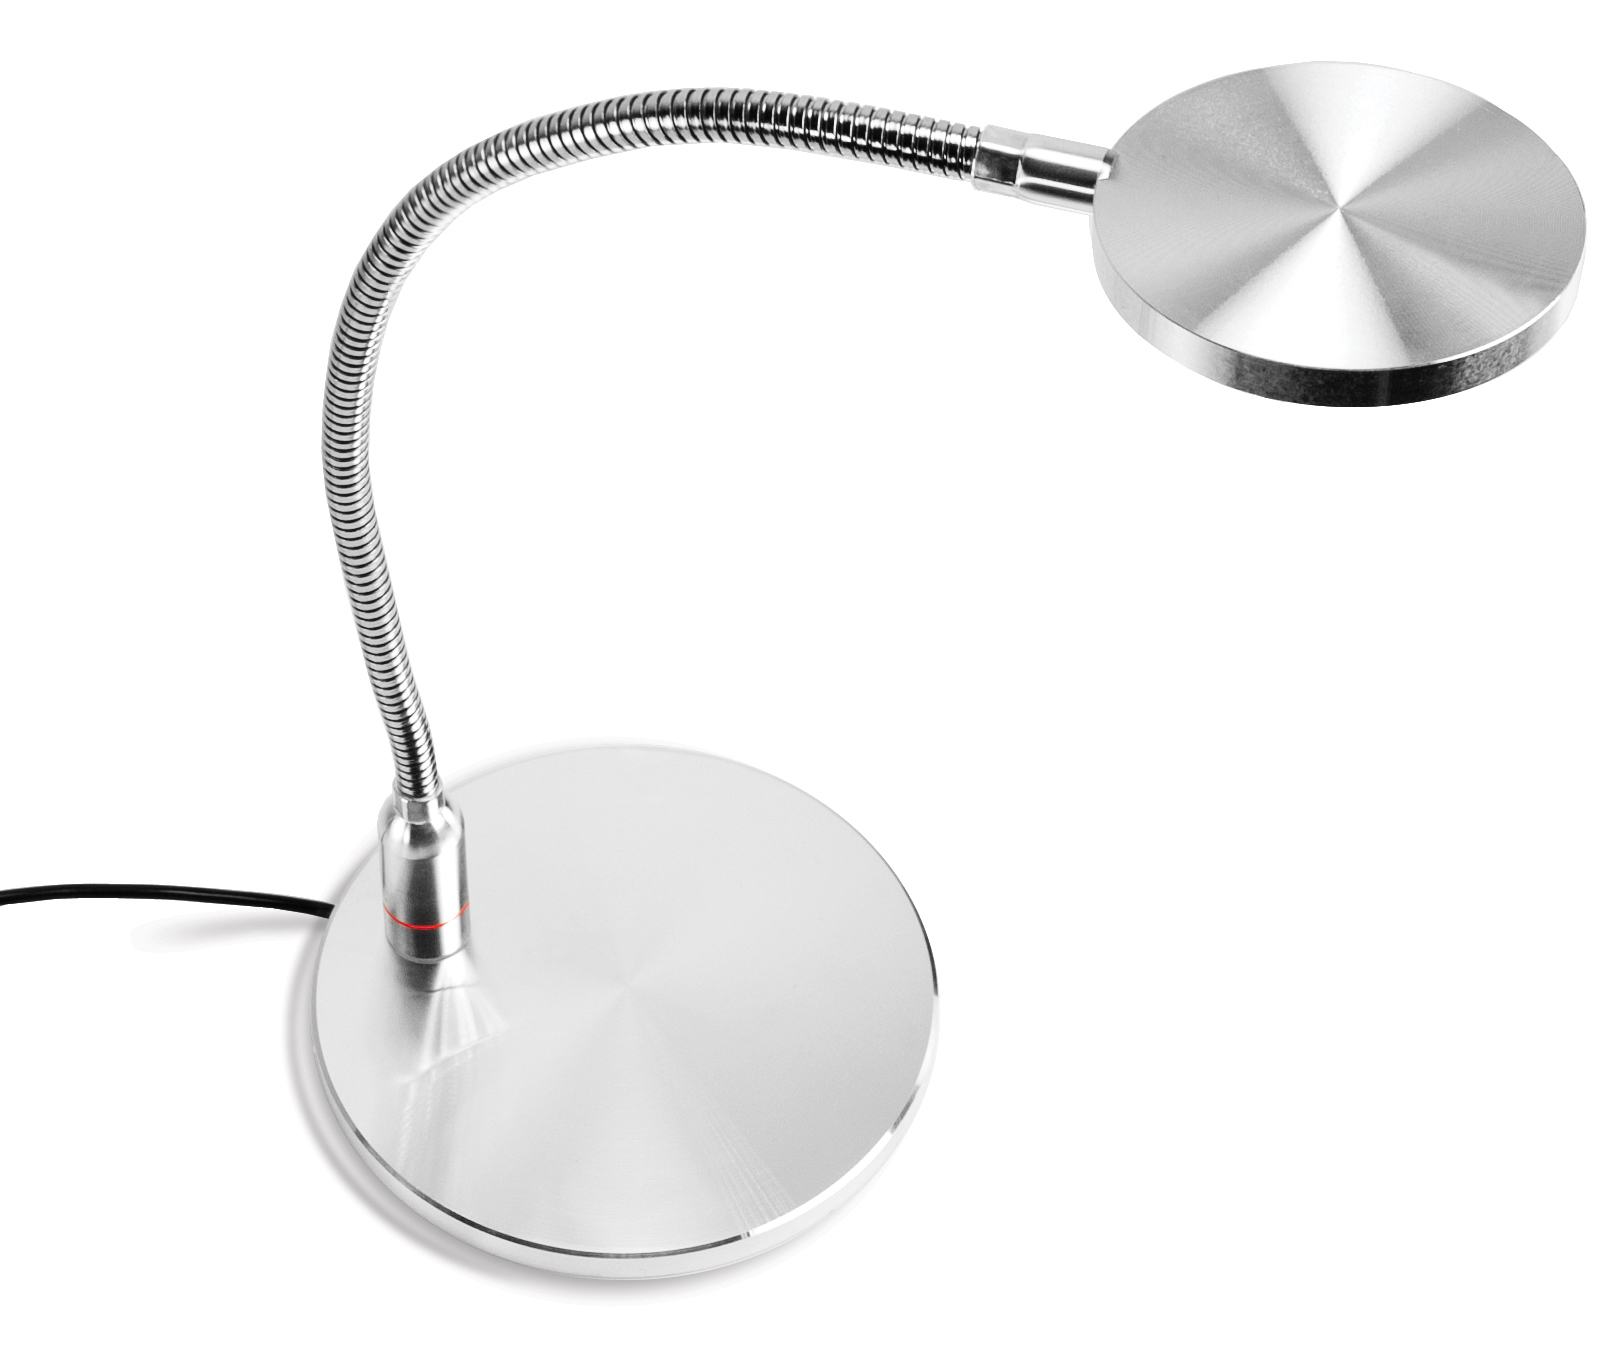 NewerTech NuGreen LED Desk Lamp